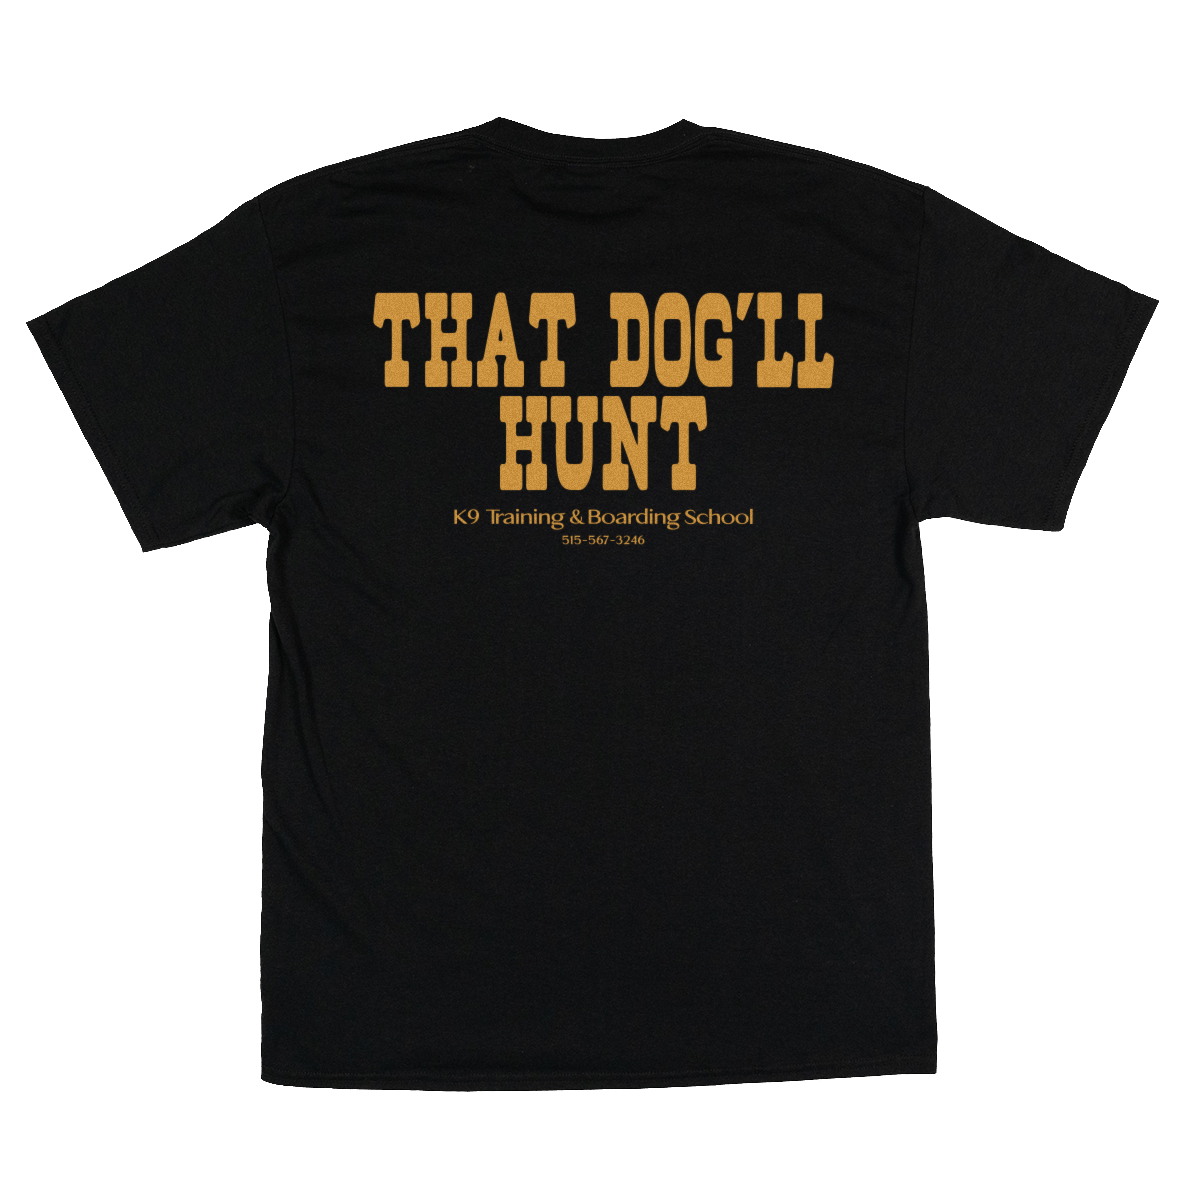 That Dog’ll Hunt - You Betcha